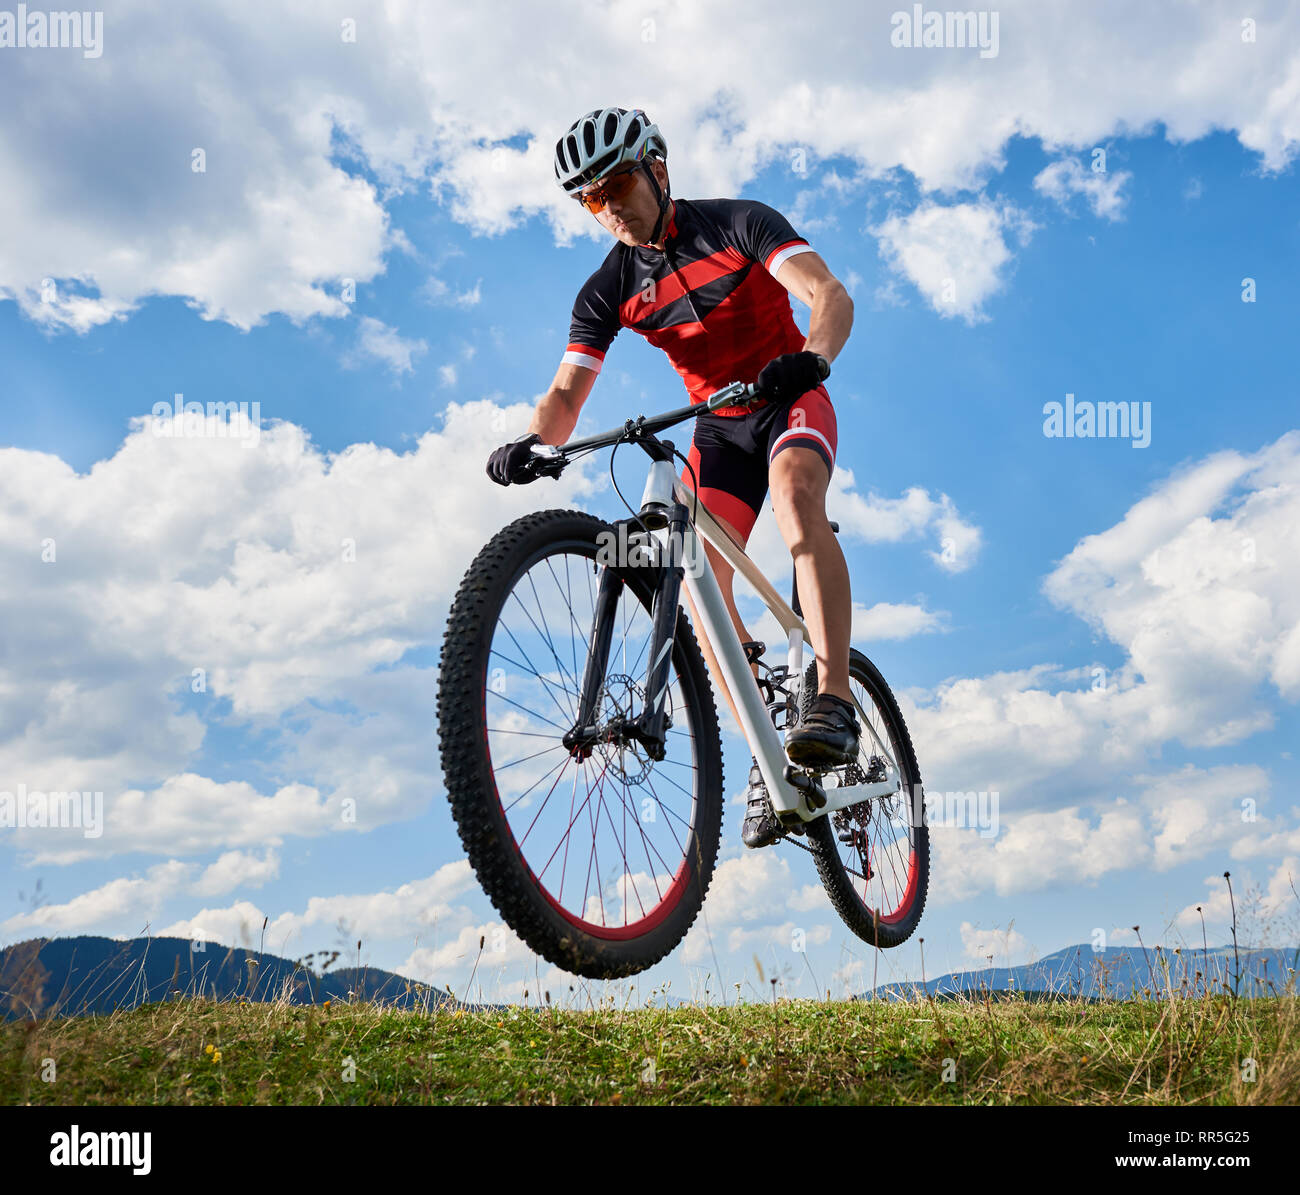 Jeune sportif athlétique biker en vol dans l'air professionnel sportswear sur son vélo sur ciel bleu avec des nuages blancs et les collines au loin contexte de vie actif et de l'extrême sport concept. Banque D'Images